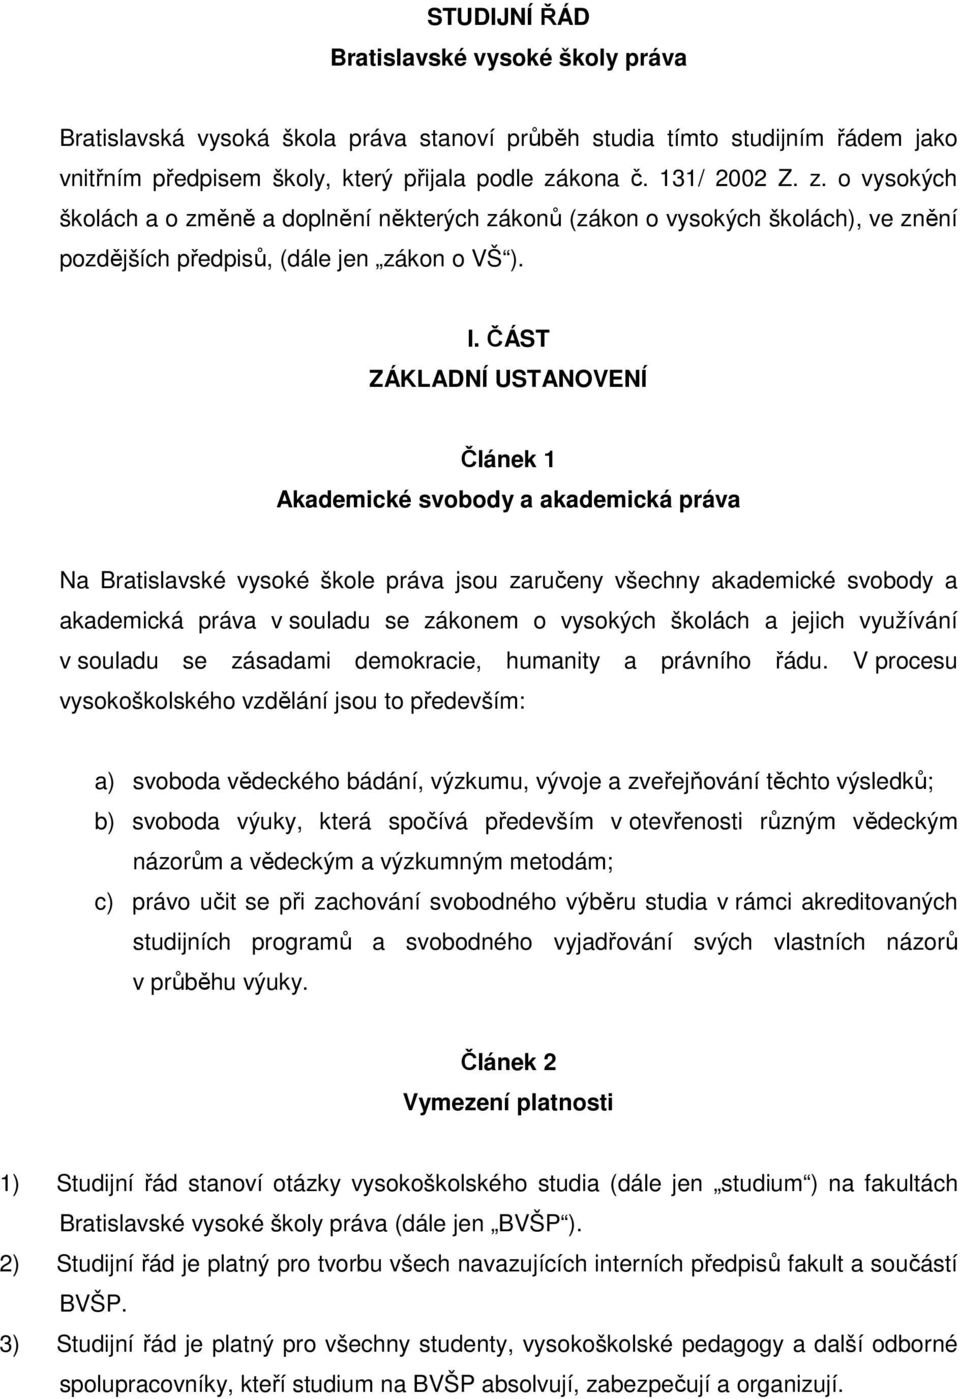 ČÁST ZÁKLADNÍ USTANOVENÍ Článek 1 Akademické svobody a akademická práva Na Bratislavské vysoké škole práva jsou zaručeny všechny akademické svobody a akademická práva v souladu se zákonem o vysokých